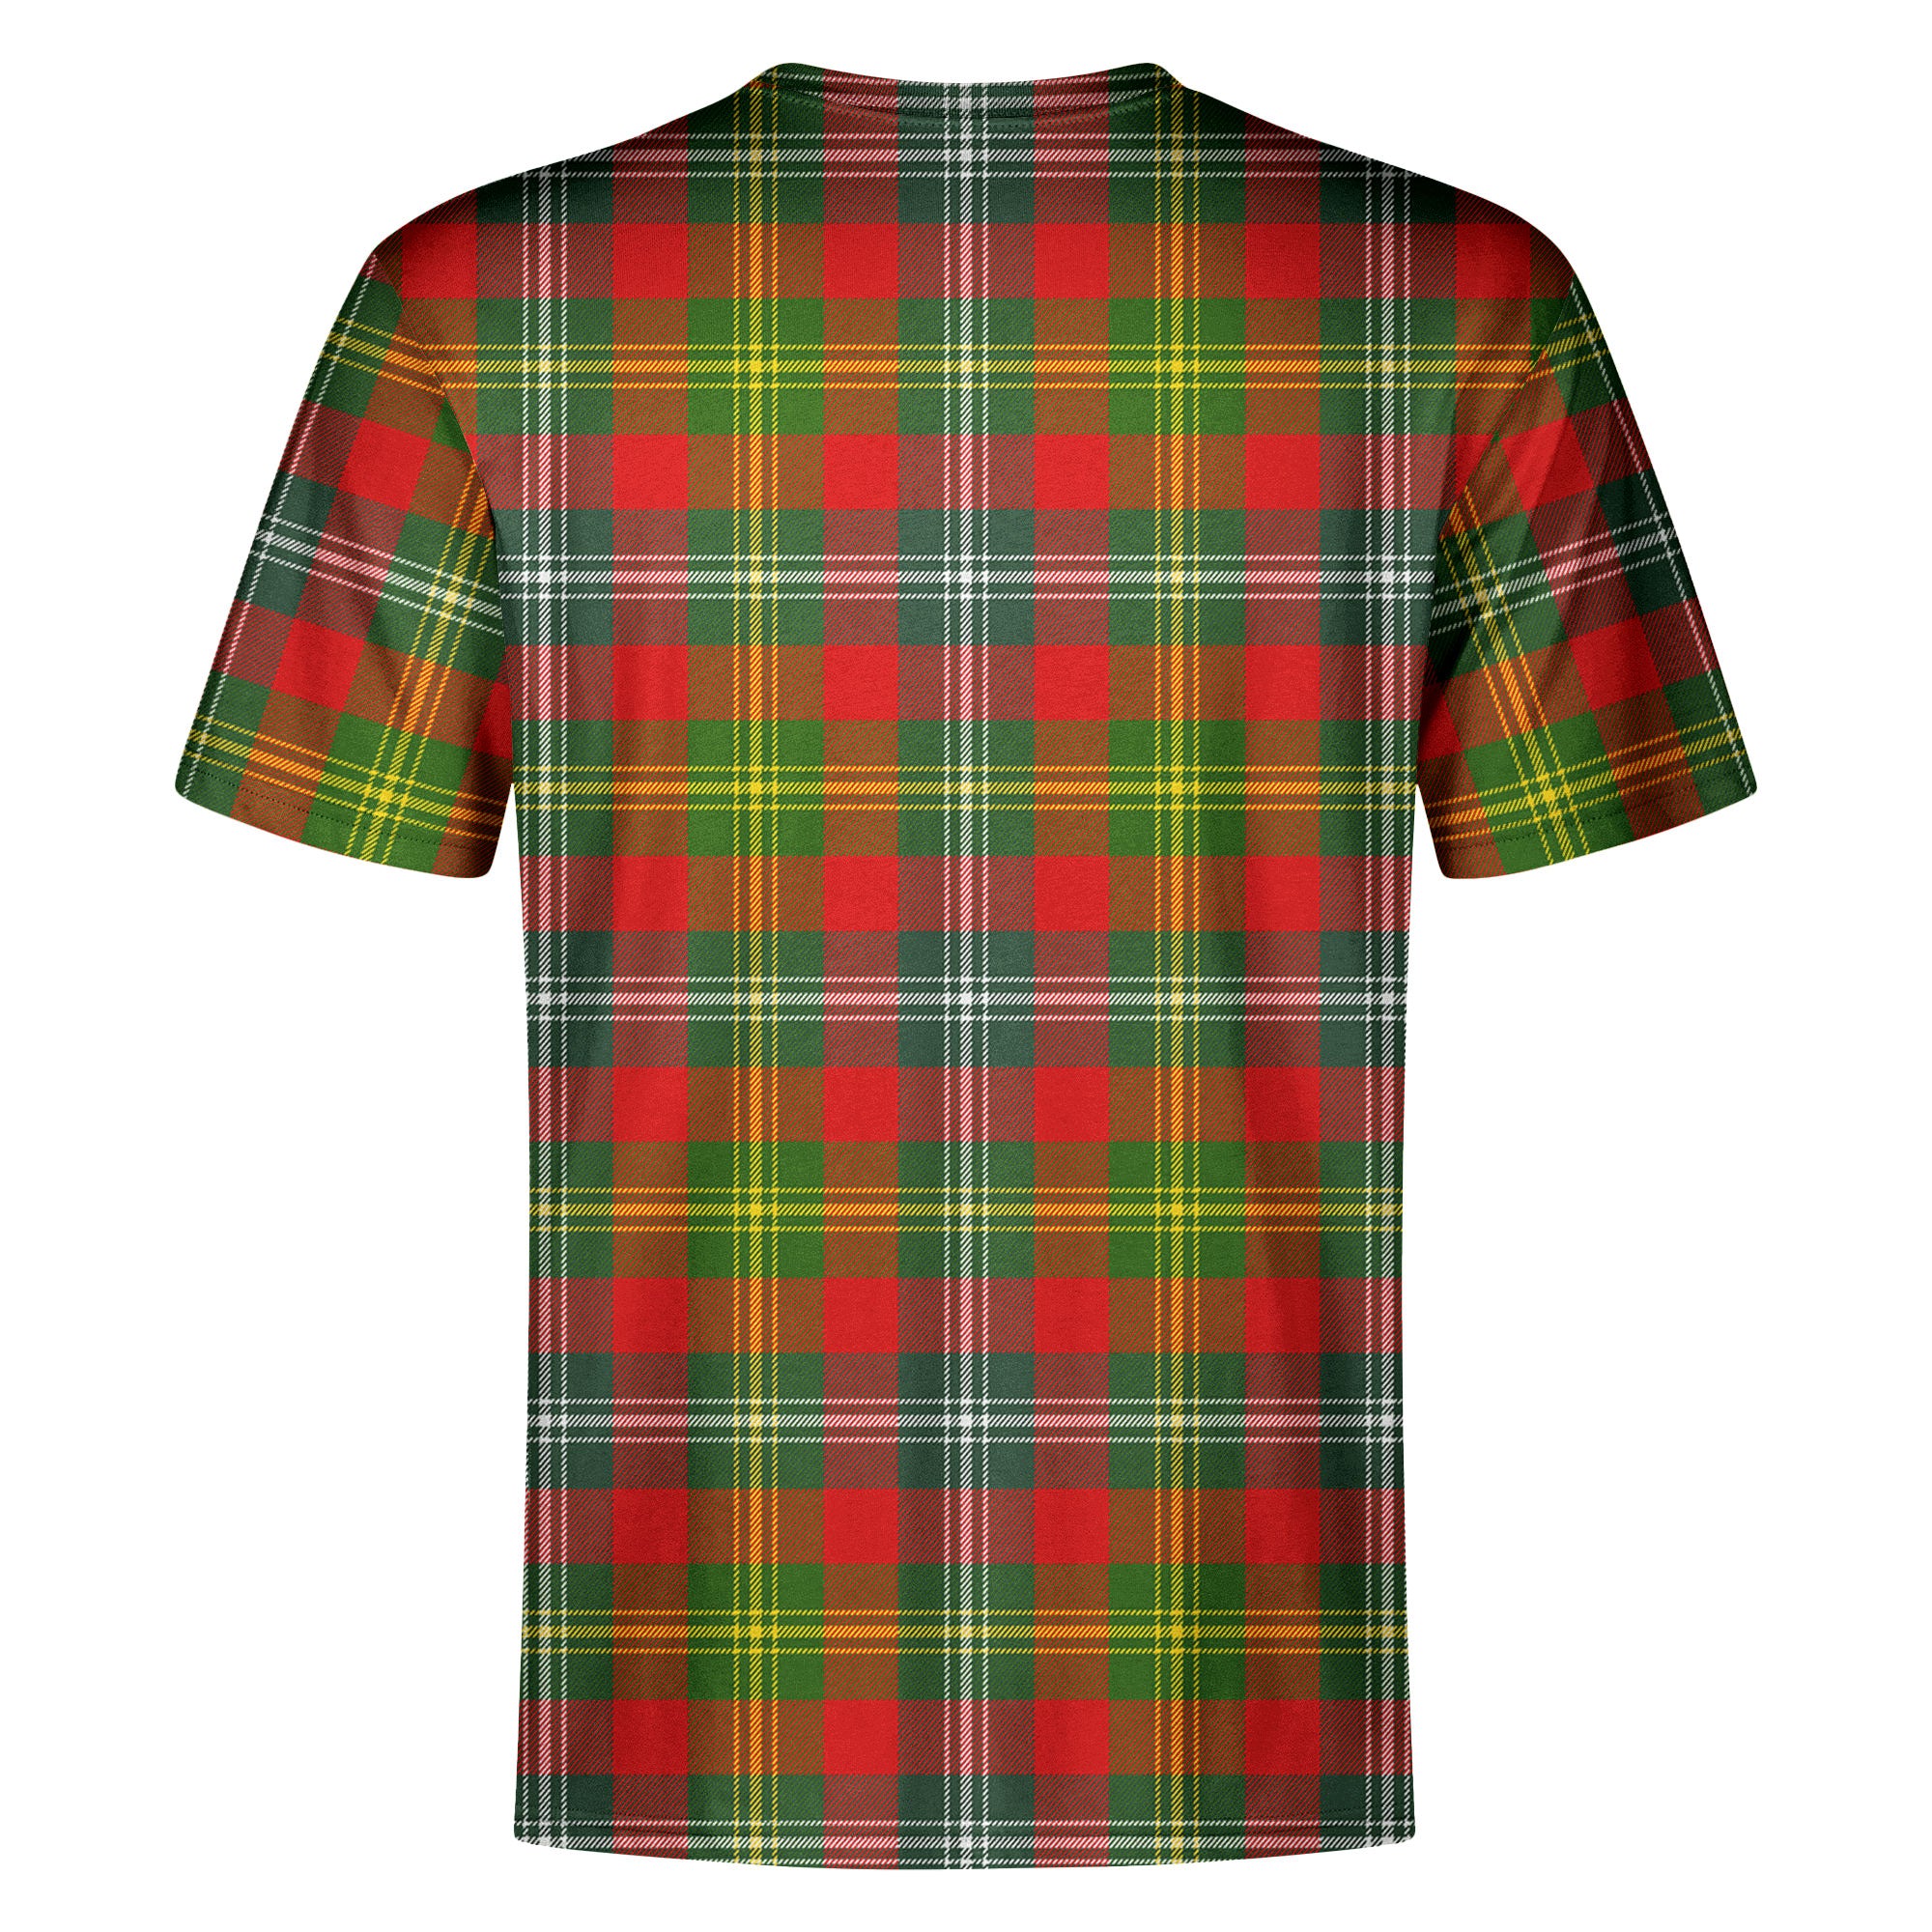 Forrester Tartan Crest T-shirt